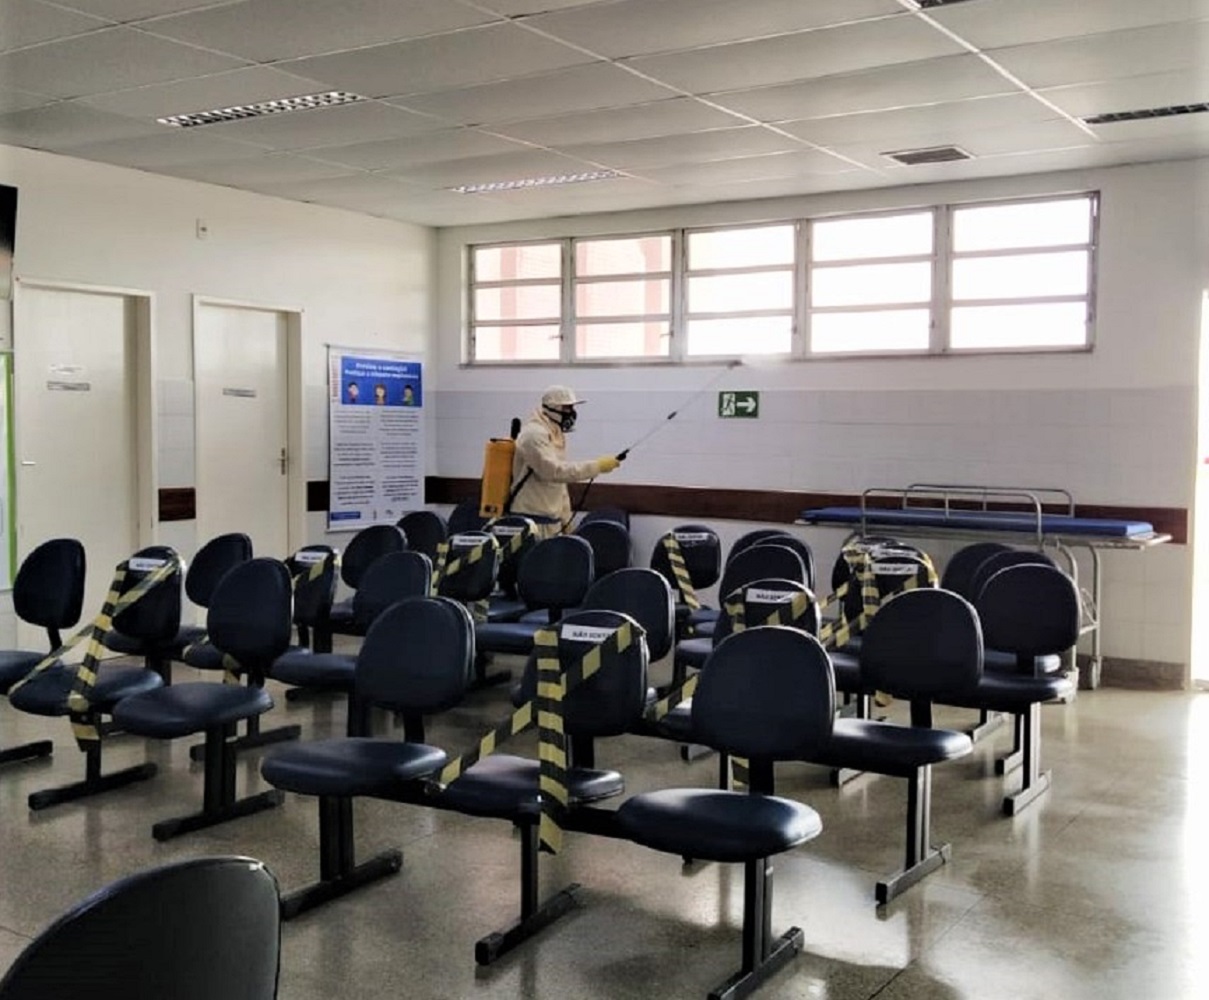 Área externa da unidade, recepção, isolamentos e áreas internas sem presença de pacientes foram desinfectadas